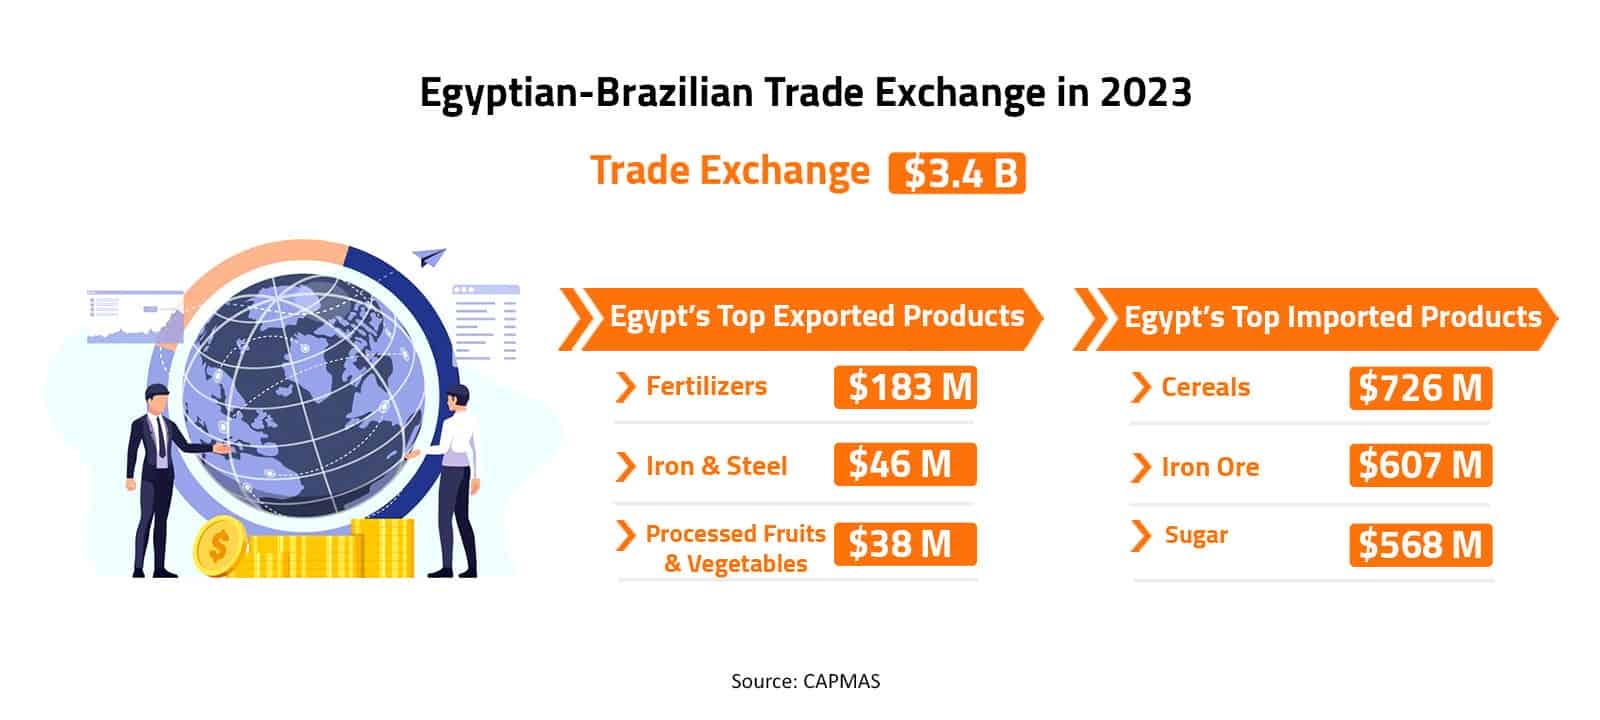 Egyptian-Brazilian Trade Exchange in 2023